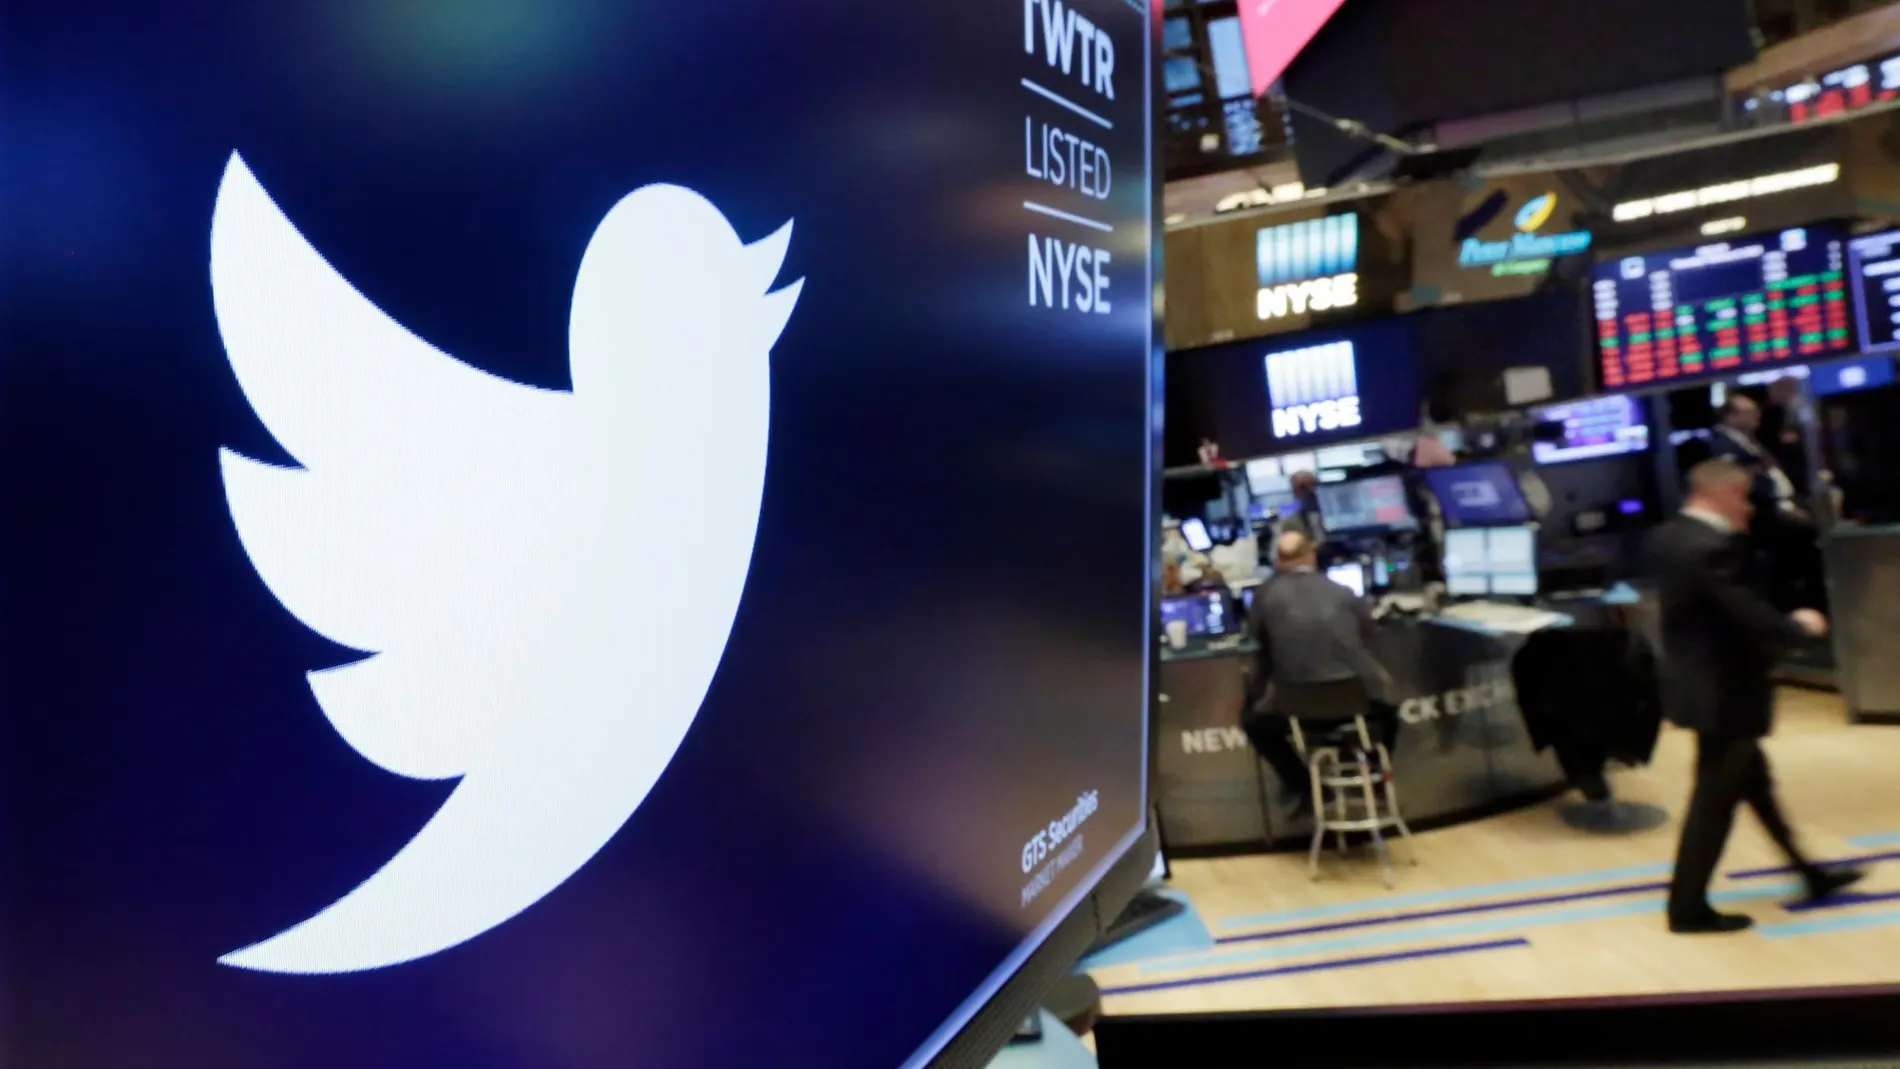 La denuncia sostiene que Twitter está violando sus términos de privacidad / AP